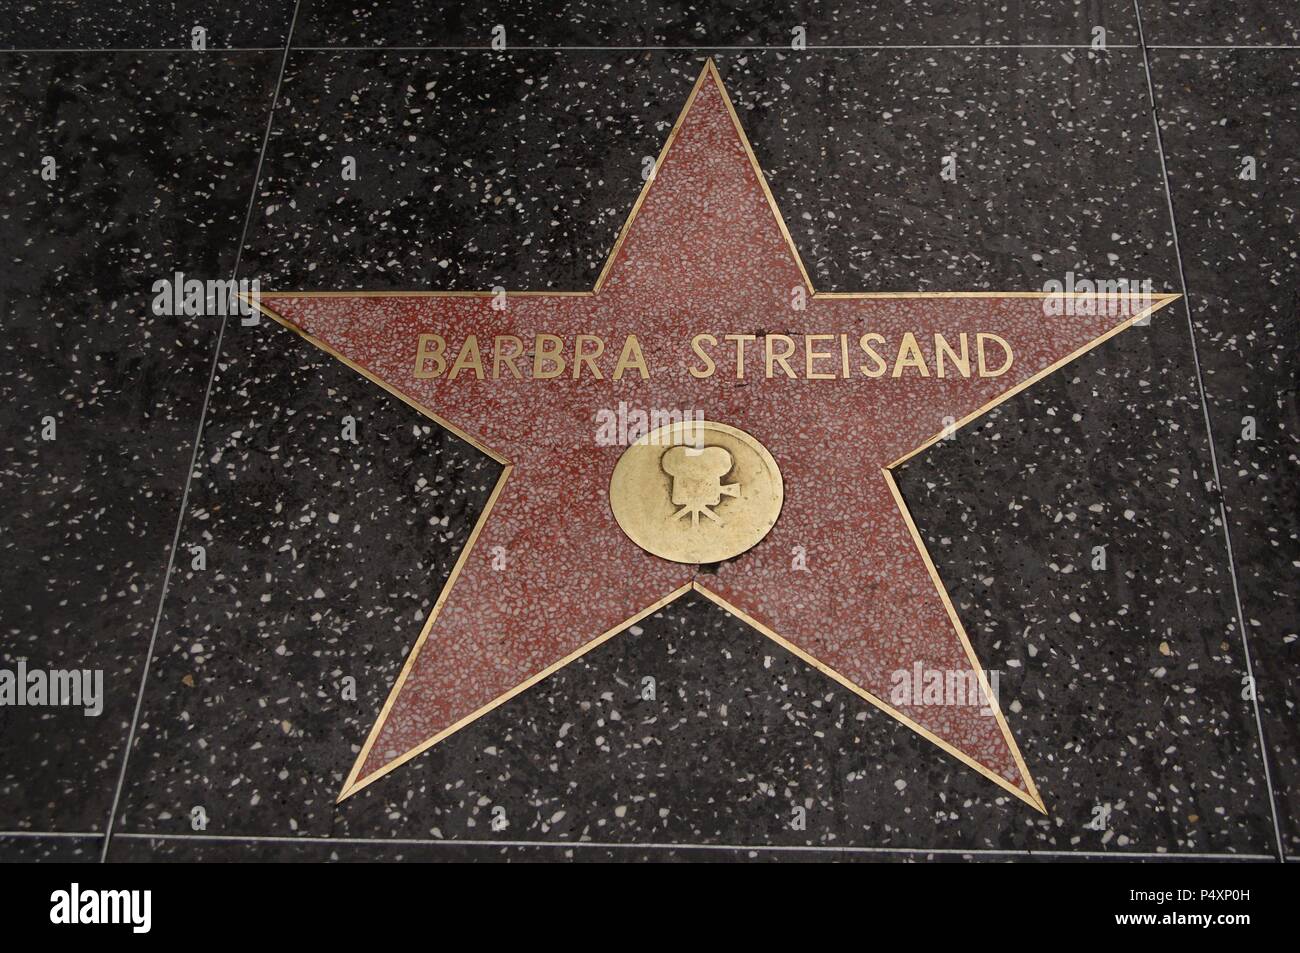 BARBRA STREISAND (n.1942). Cantante y actriz estadounidense. ESTRELLA DE BARBRA STREISAND en el PASEO DE LA FAMA (THE WALK OF FAME) en Hollywood Boulevard. HOLLYWOOD. LOS ANGELES. Estado de California. Estados Unidos. Stock Photo